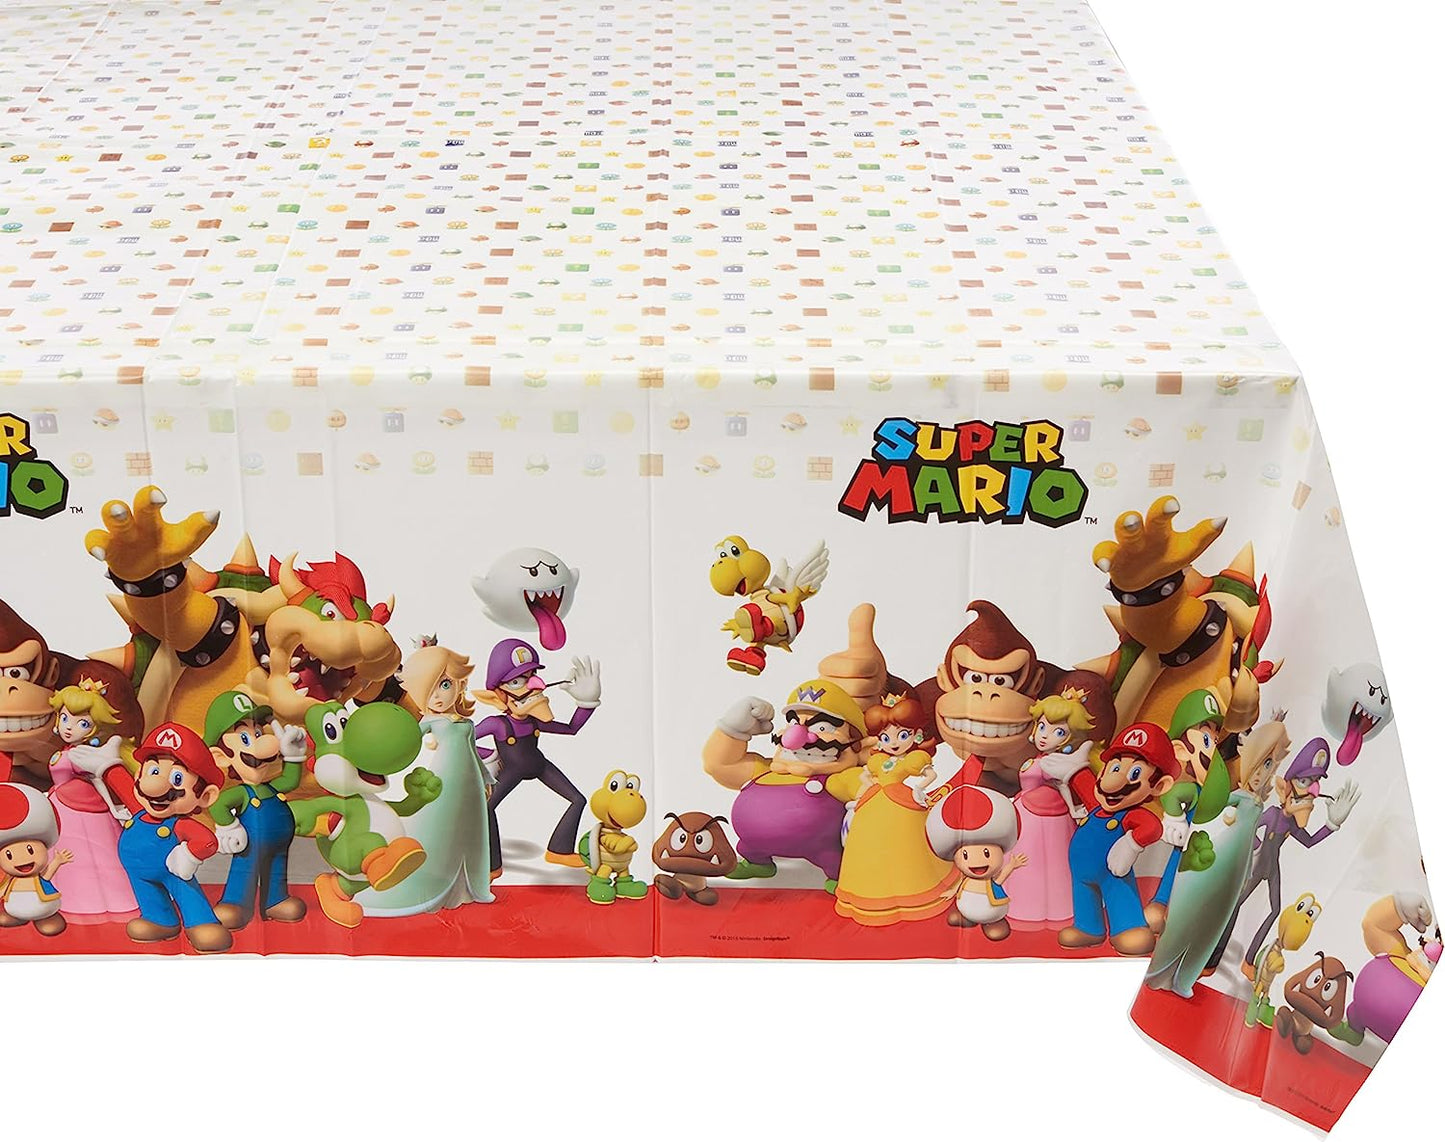 Super Mario Brothers Plastic Tablecloth